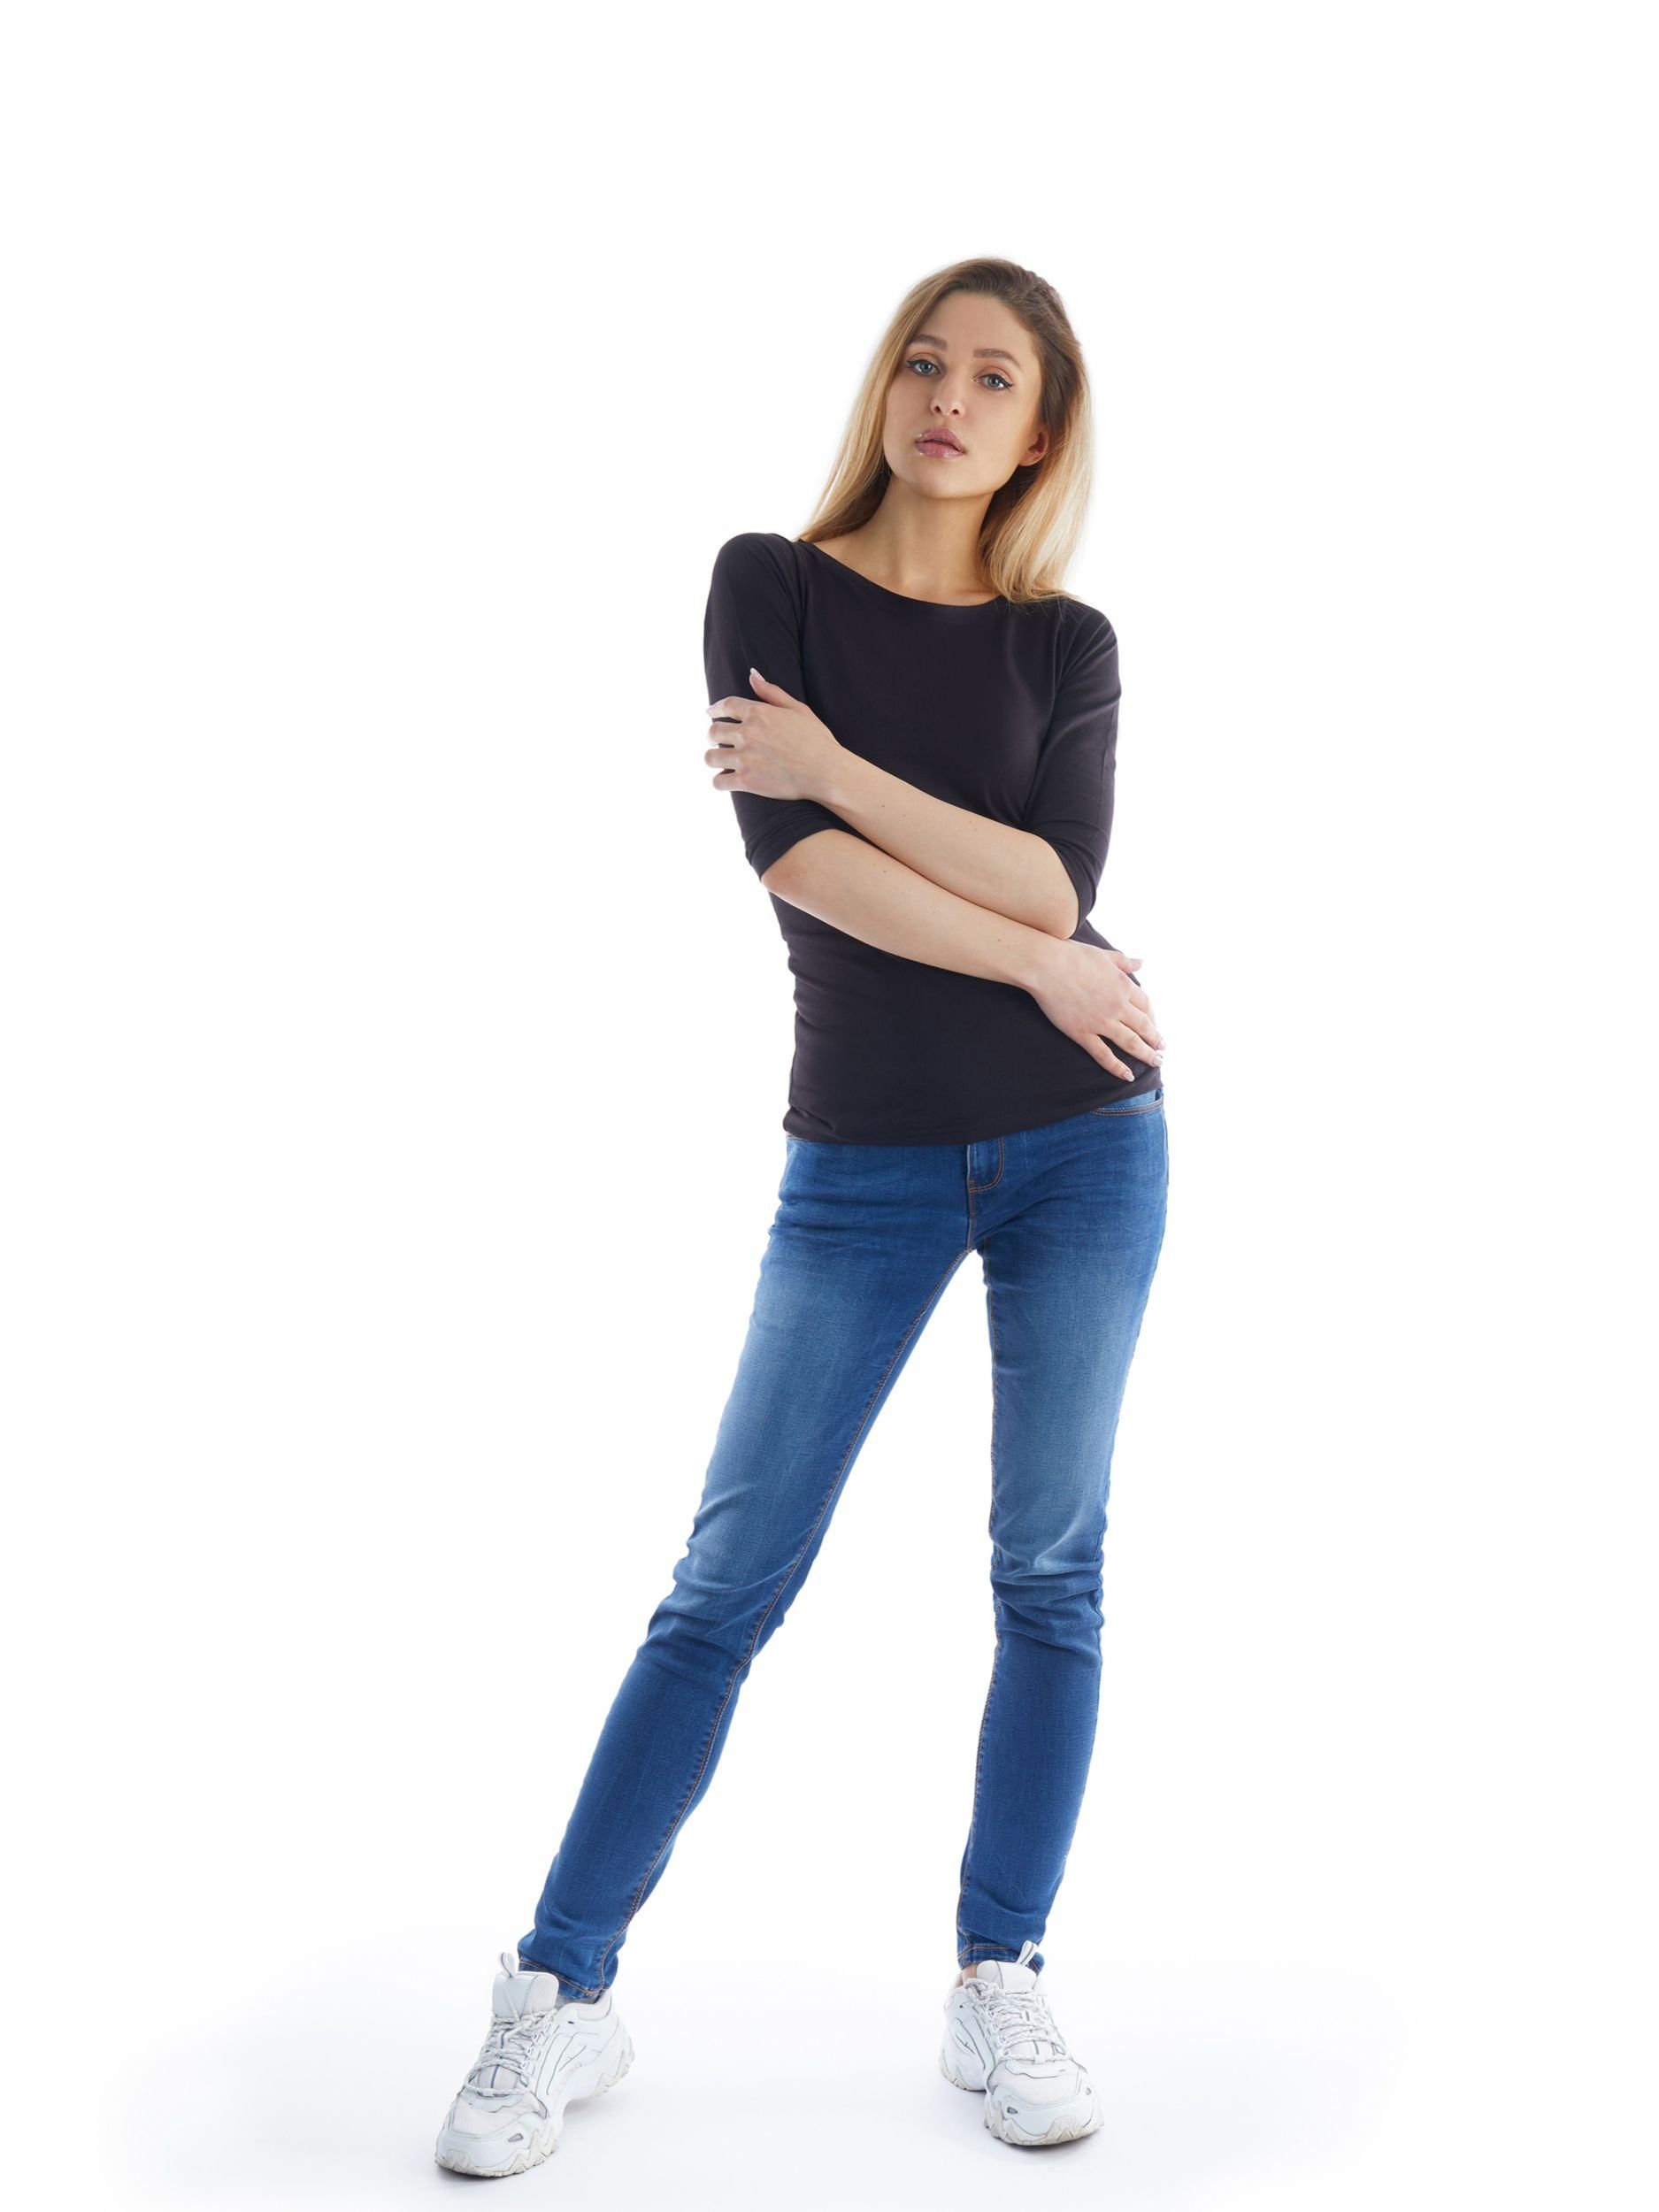 5-Pocket-Jeans COLOR SPLASH OF